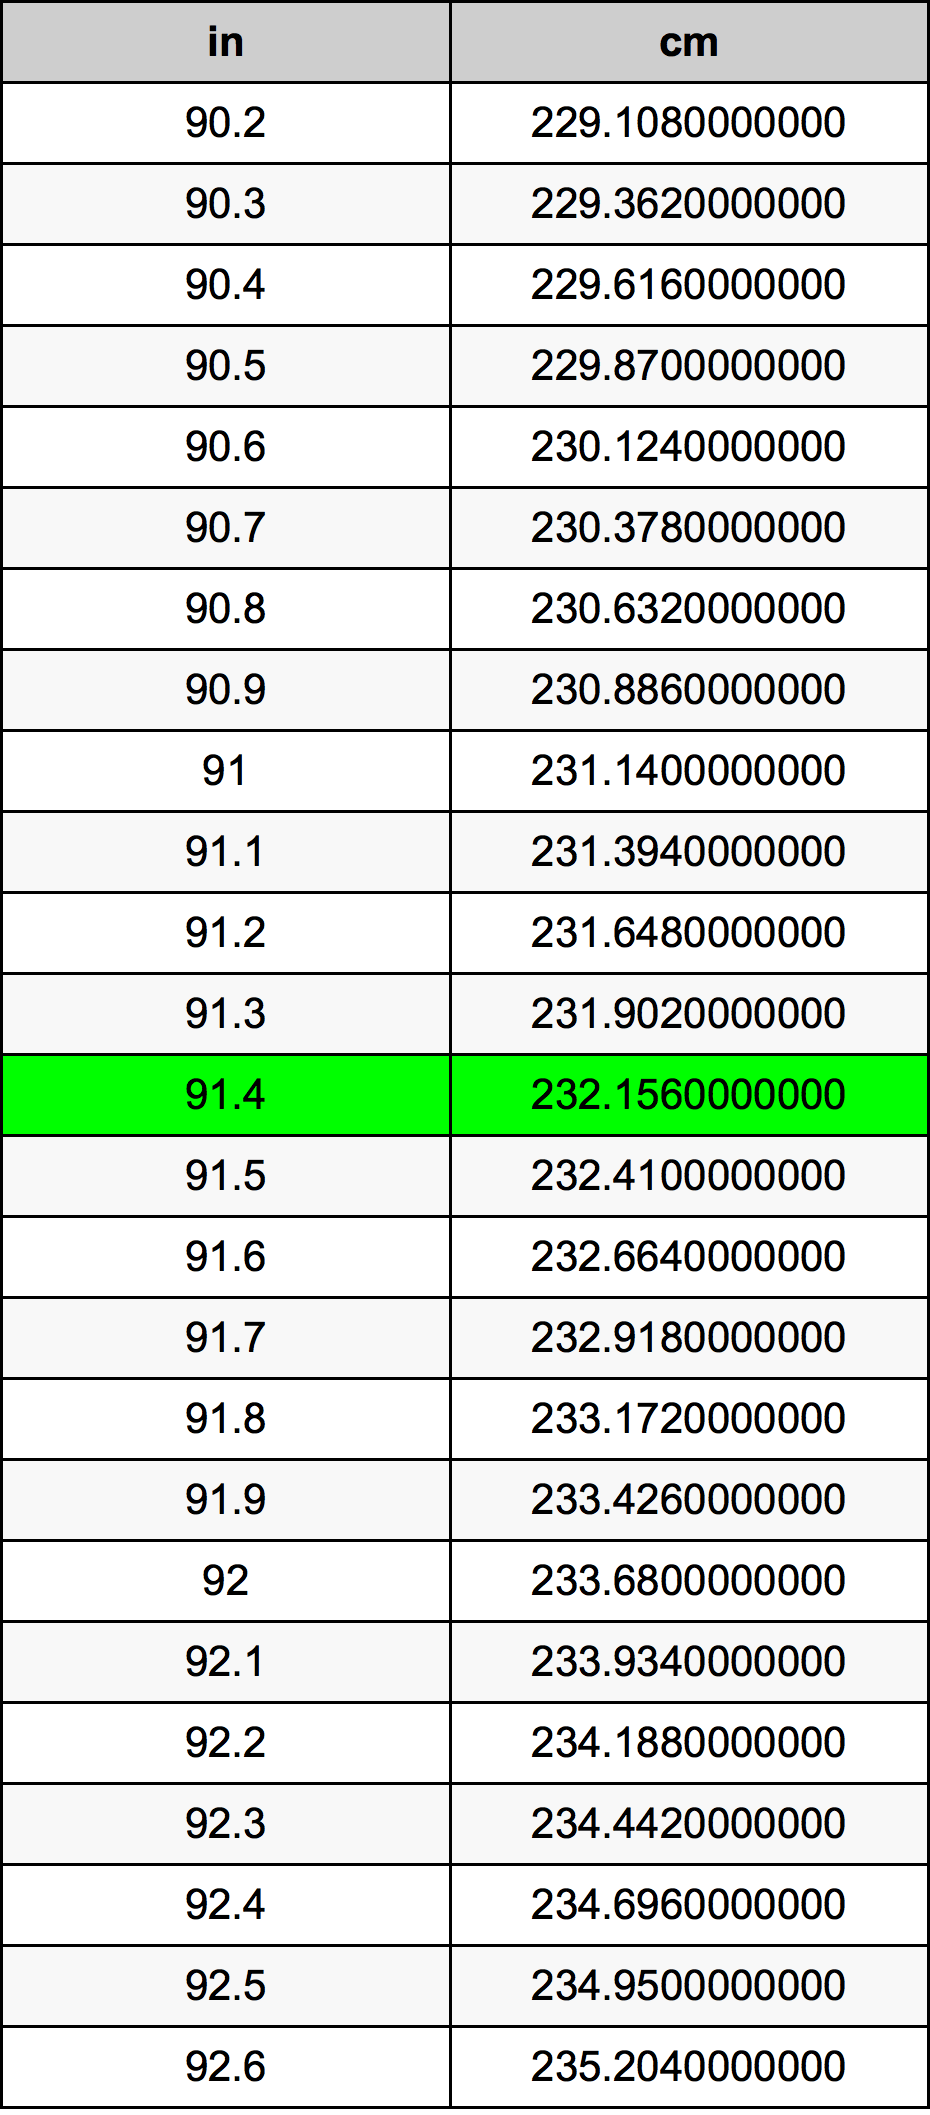 91.4 Pulzier konverżjoni tabella